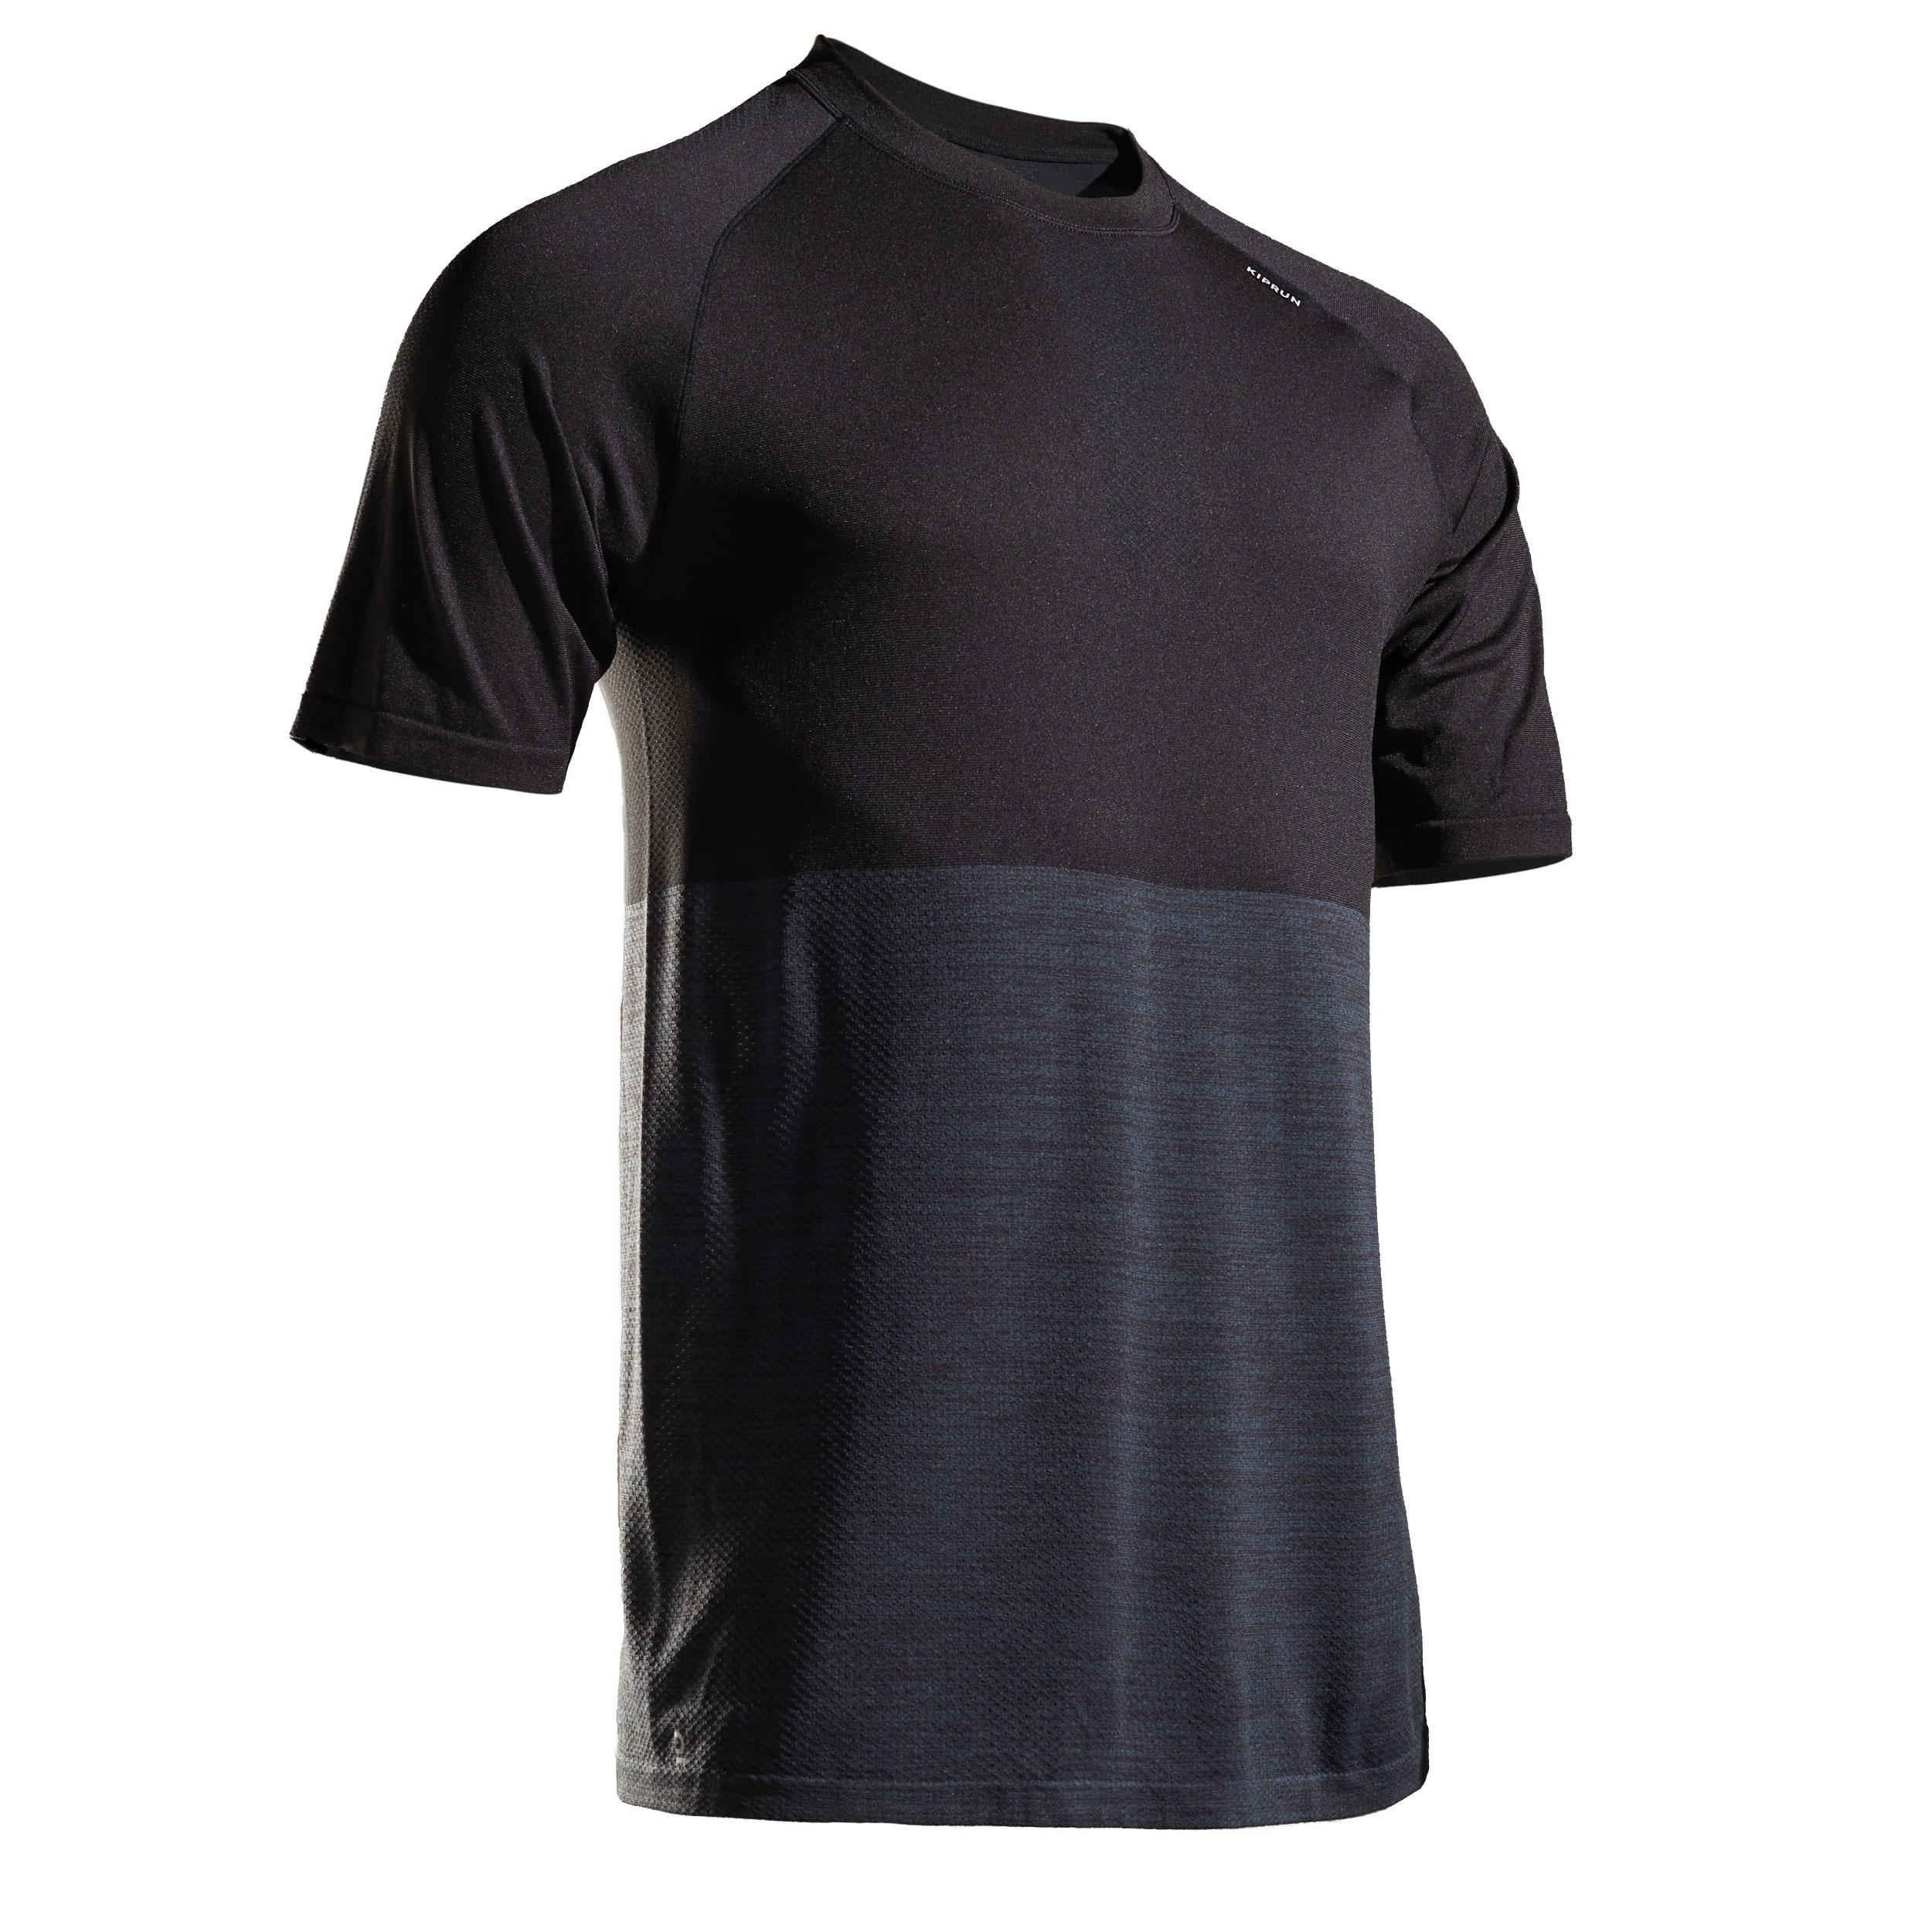 Men's Running T-Shirt - Grey/Black - KIPRUN